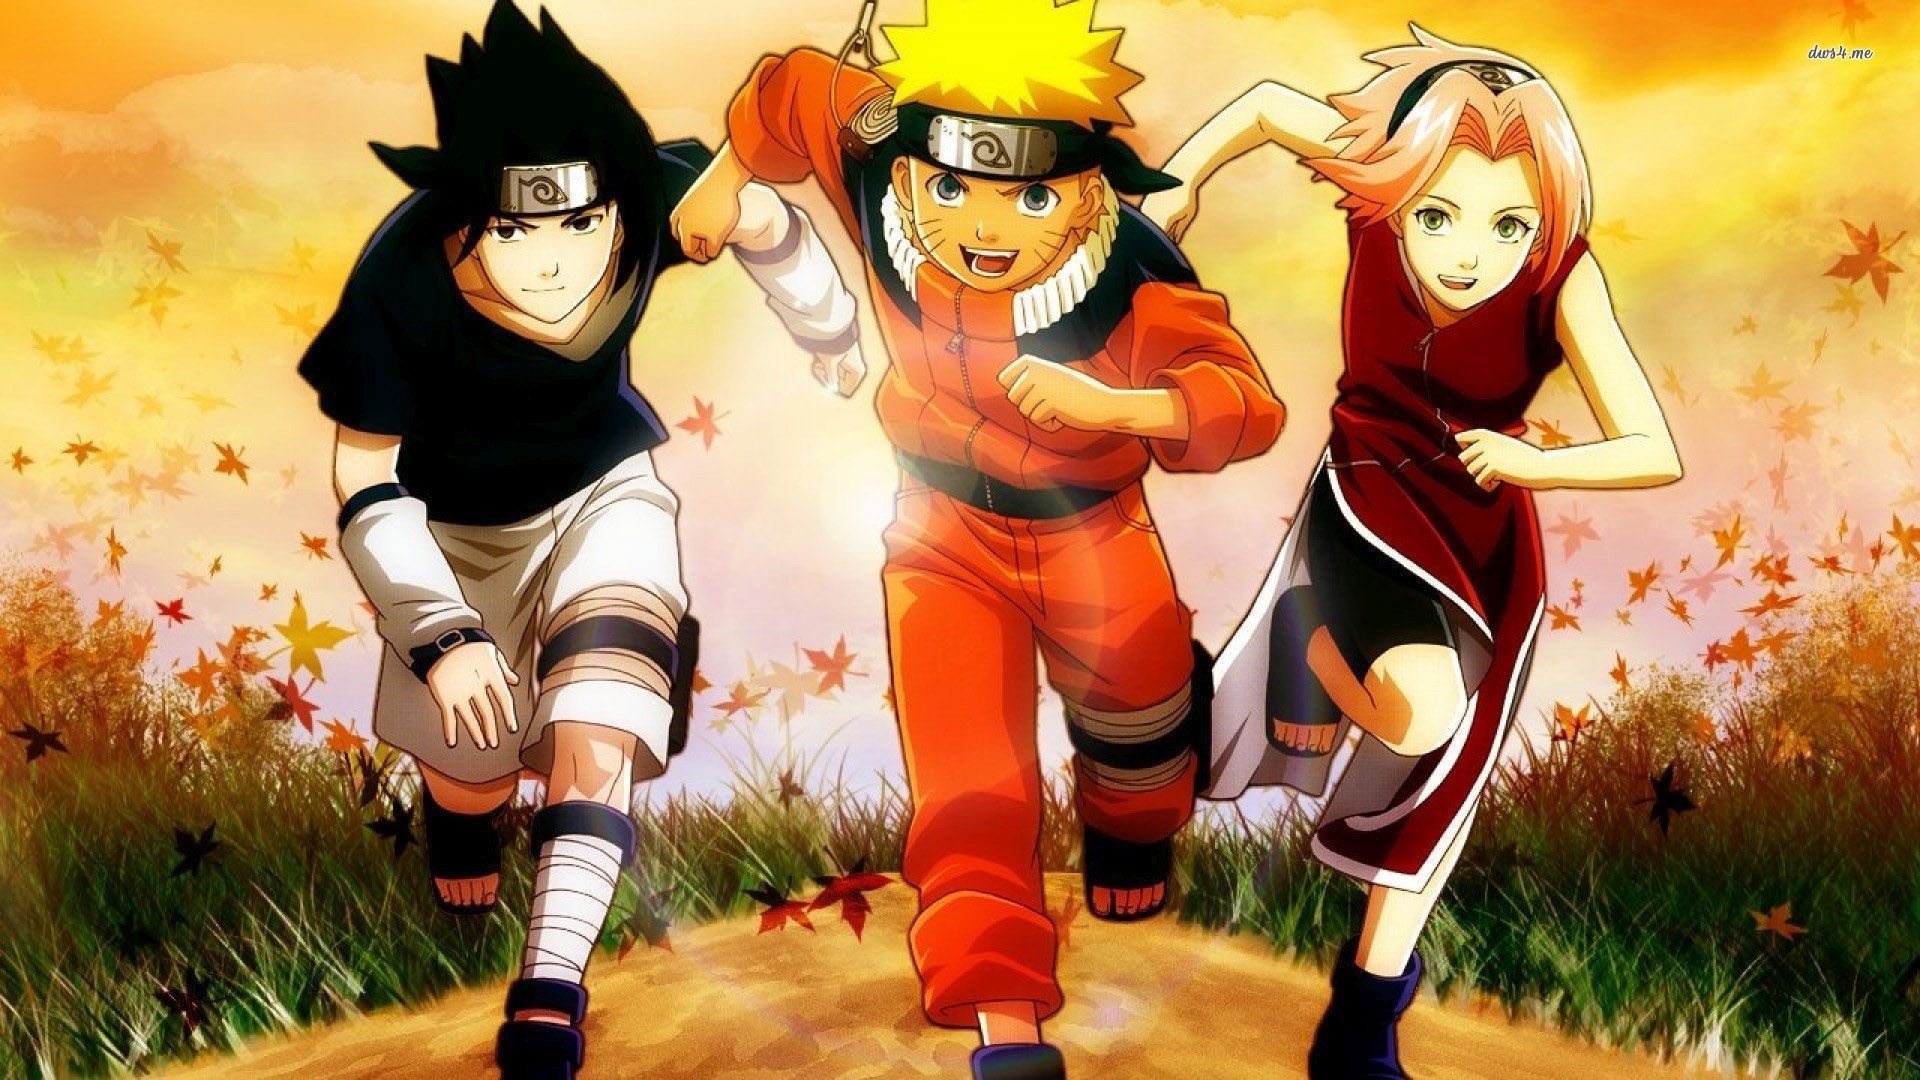 Naruto Naruto Wallpaper